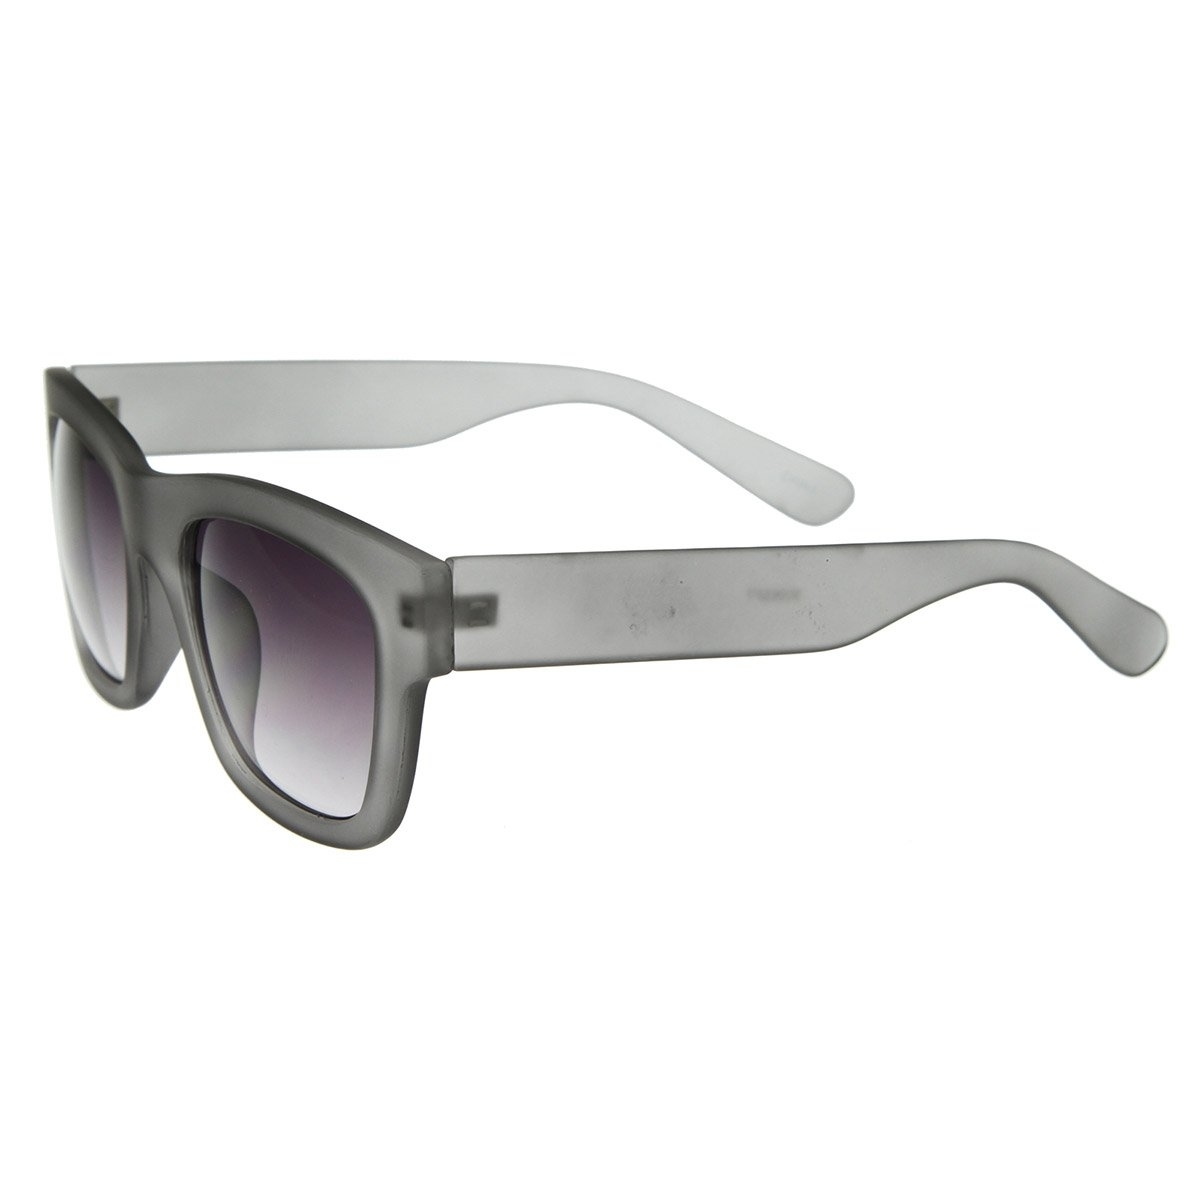 Designer Inspired Hispter Fashion Soft Finish Bold Horn Rimmed Sunglasses - Tortoise